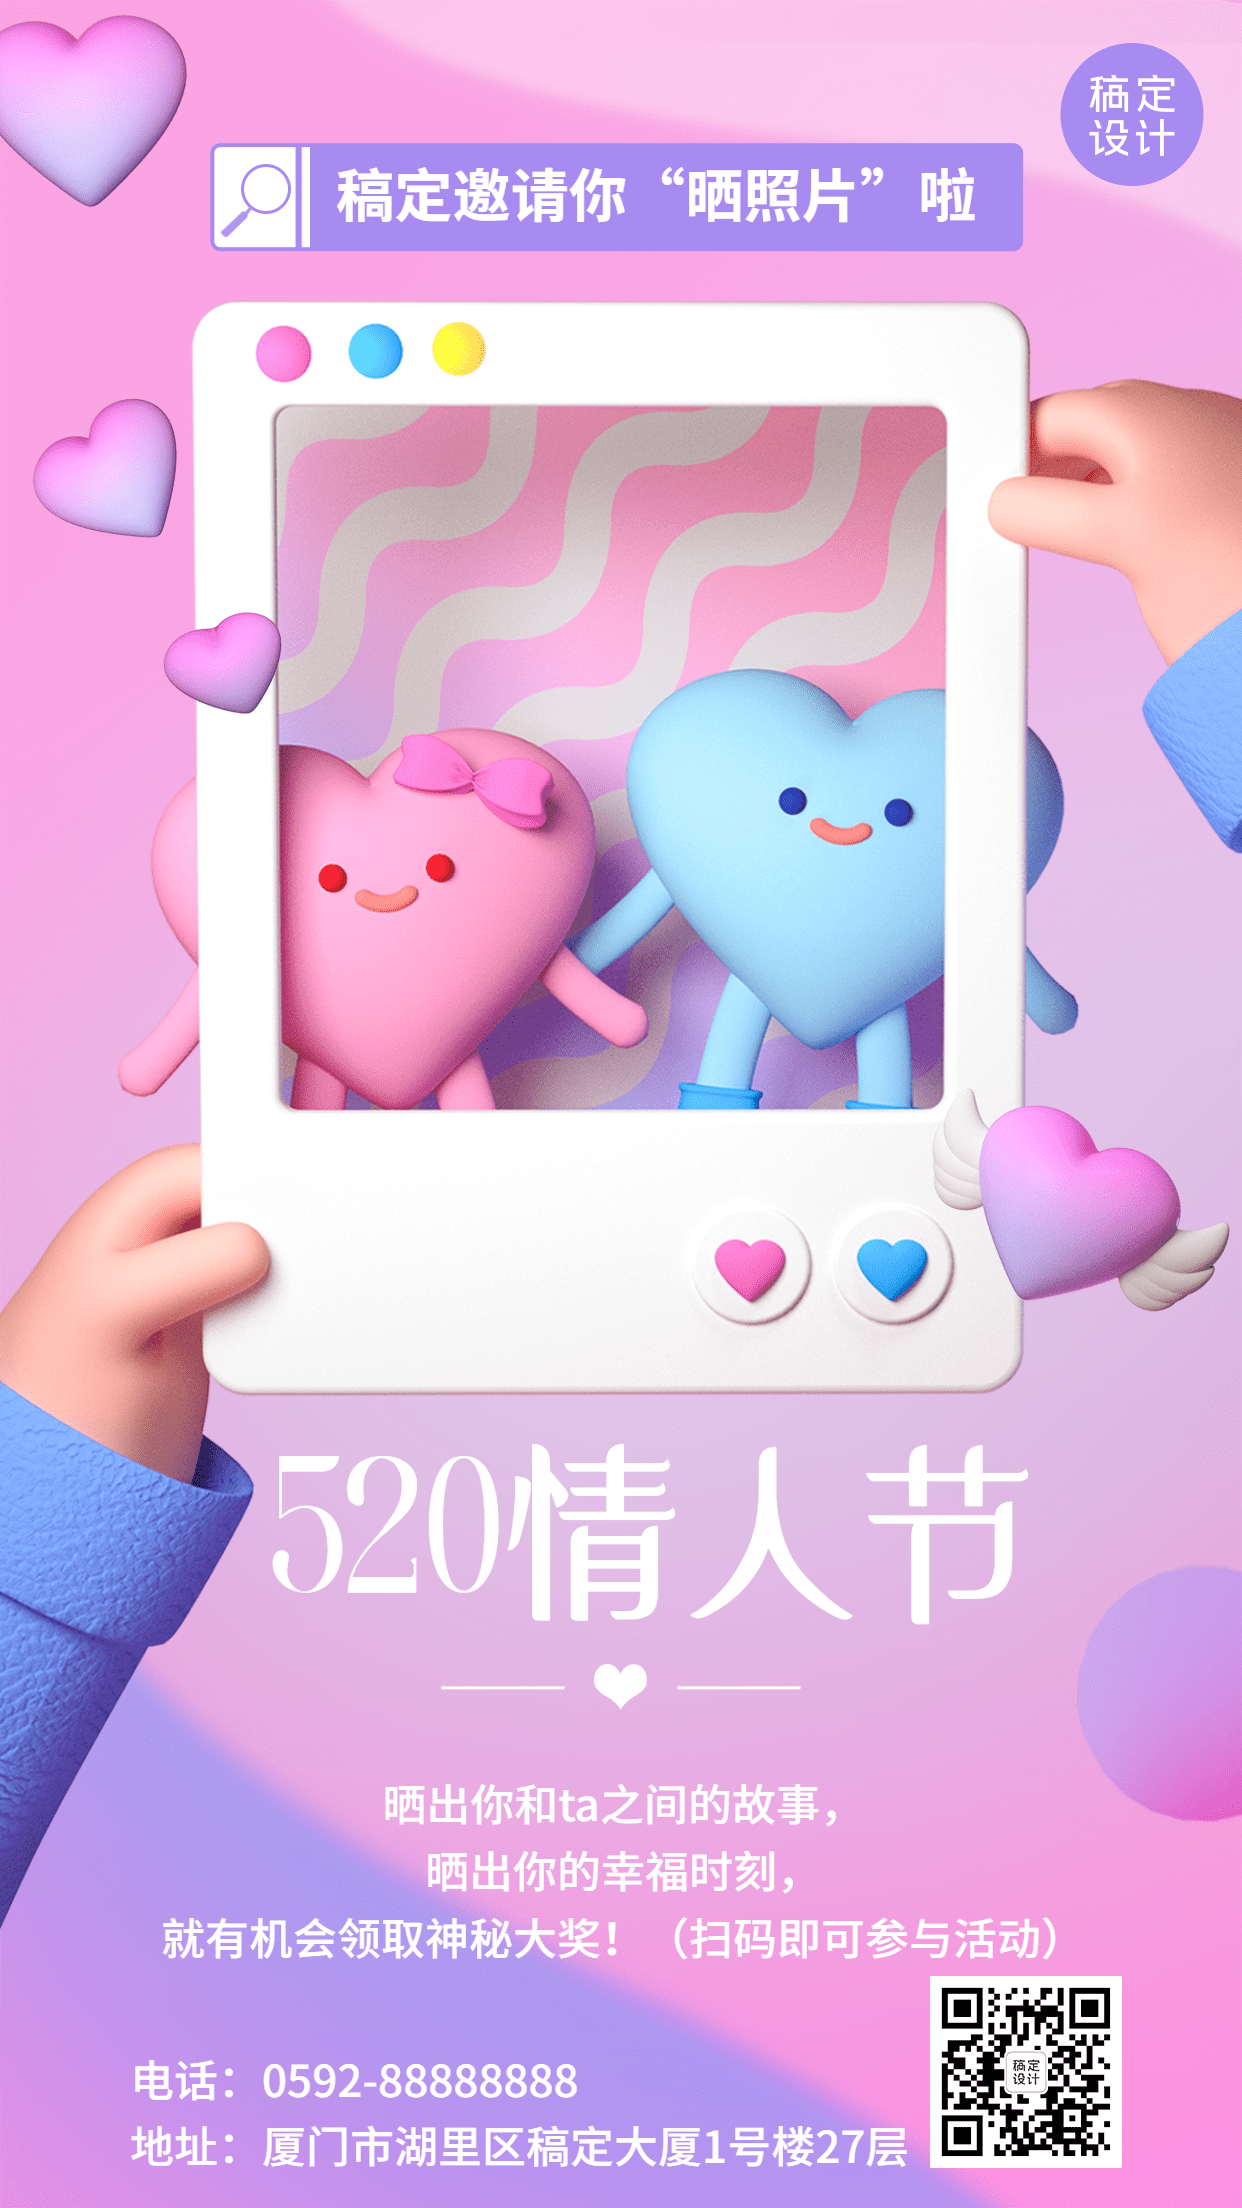 520情人节节日活动晒照表白3D手机海报